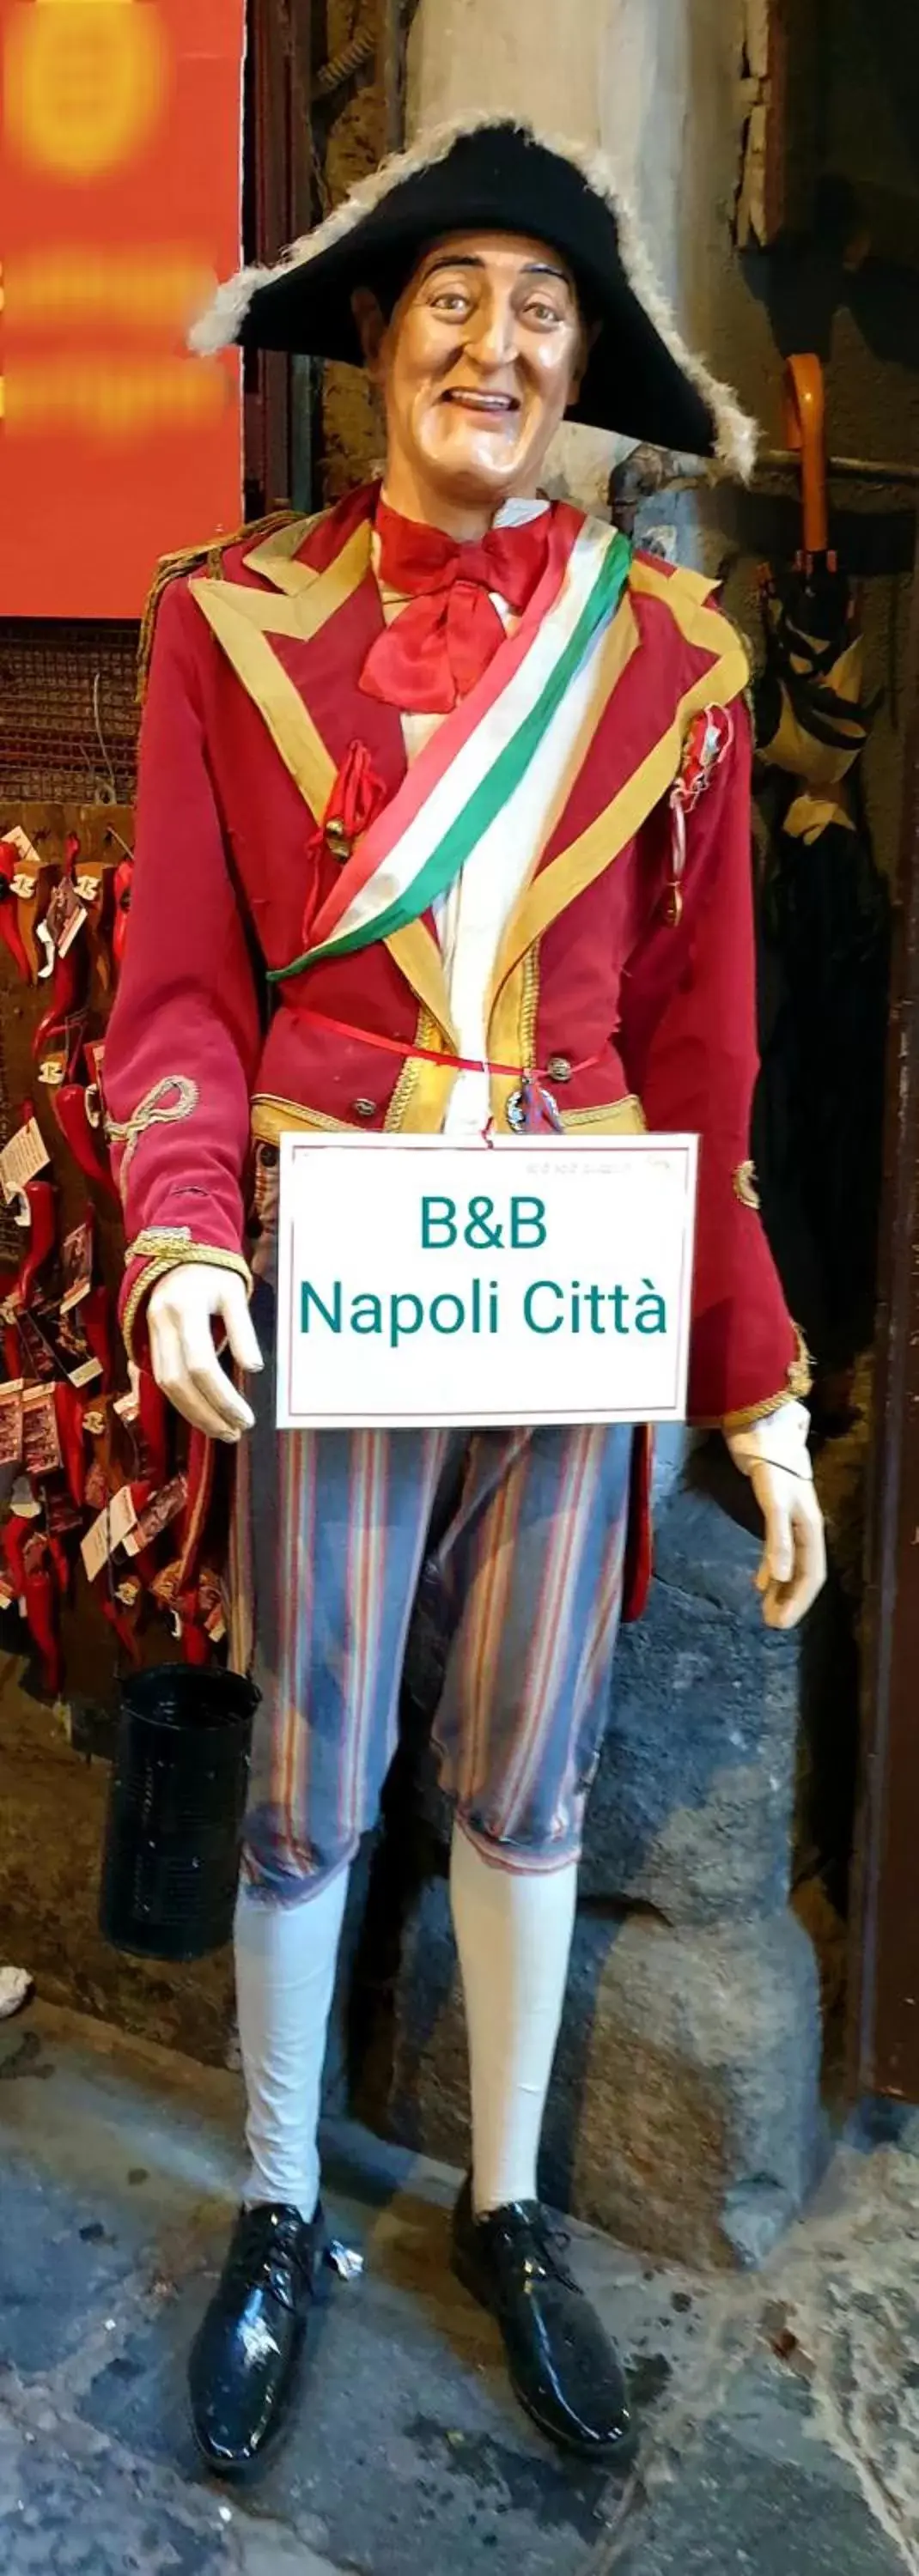 B&B Napoli Città